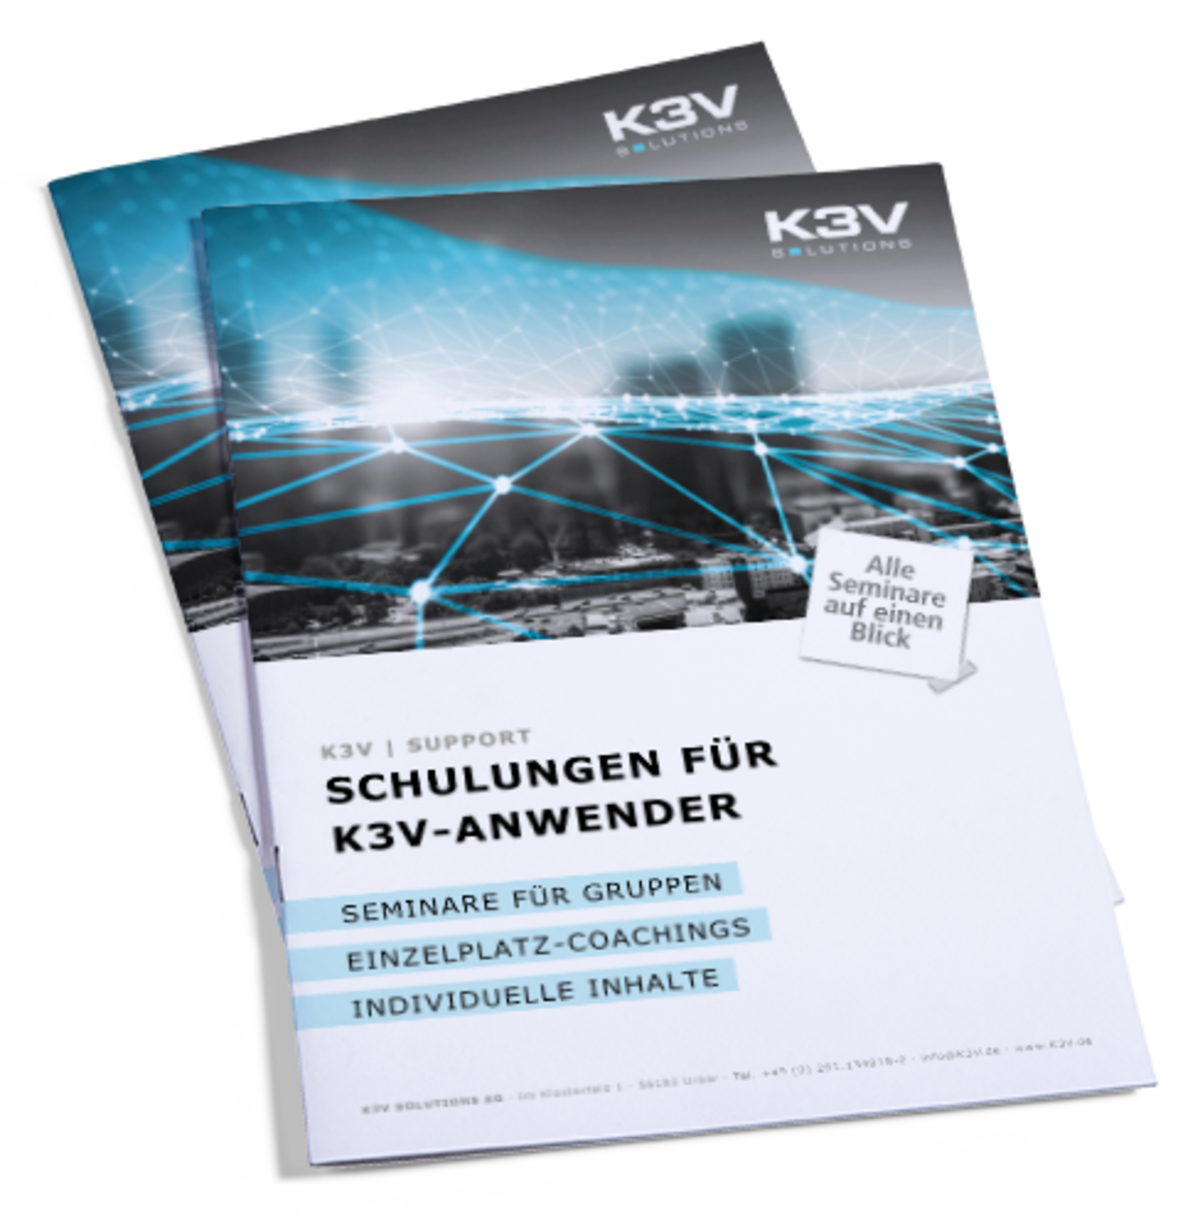 Broschüre: Schulungen für K3V-Anwender